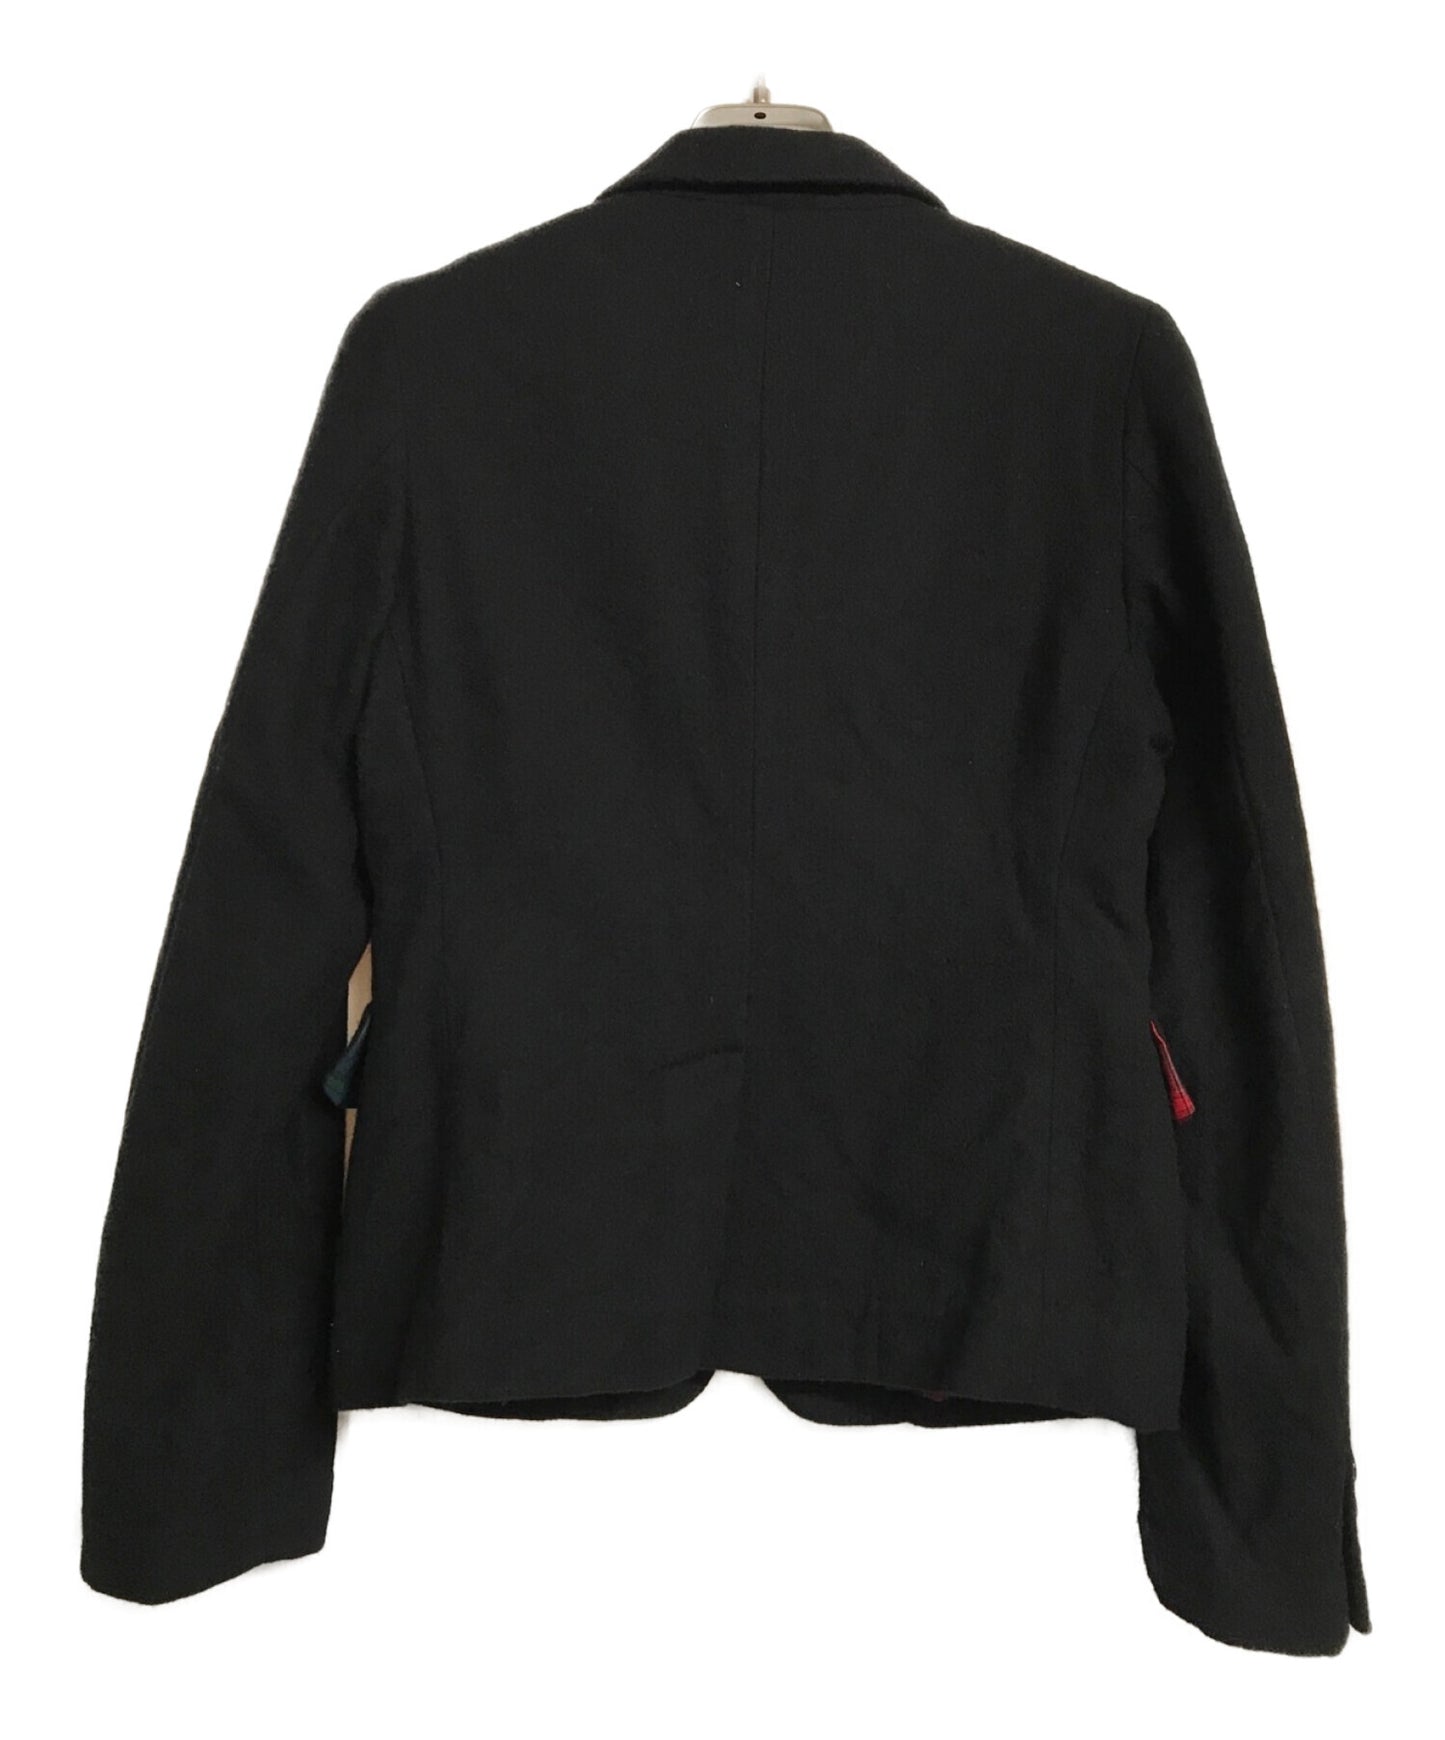 Black Comme des Garcons Jacket 1F-J009